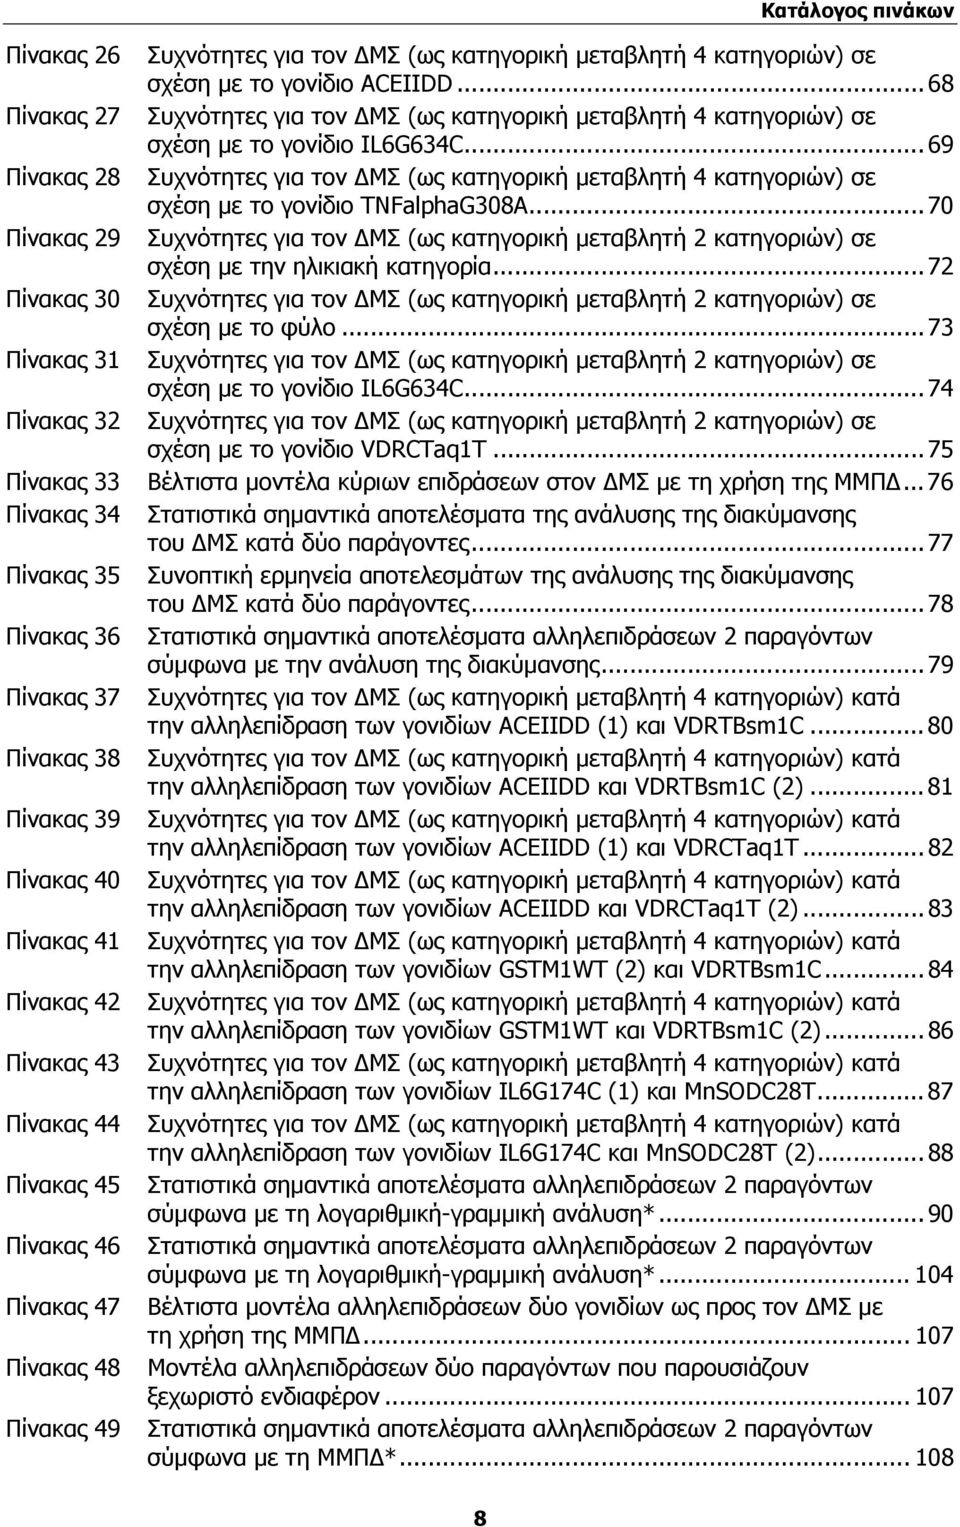 .. 69 Πίνακας 28 Συχνότητες για τον ΔΜΣ (ως κατηγορική μεταβλητή 4 κατηγοριών) σε σχέση με το γονίδιο TNFalphaG308A.